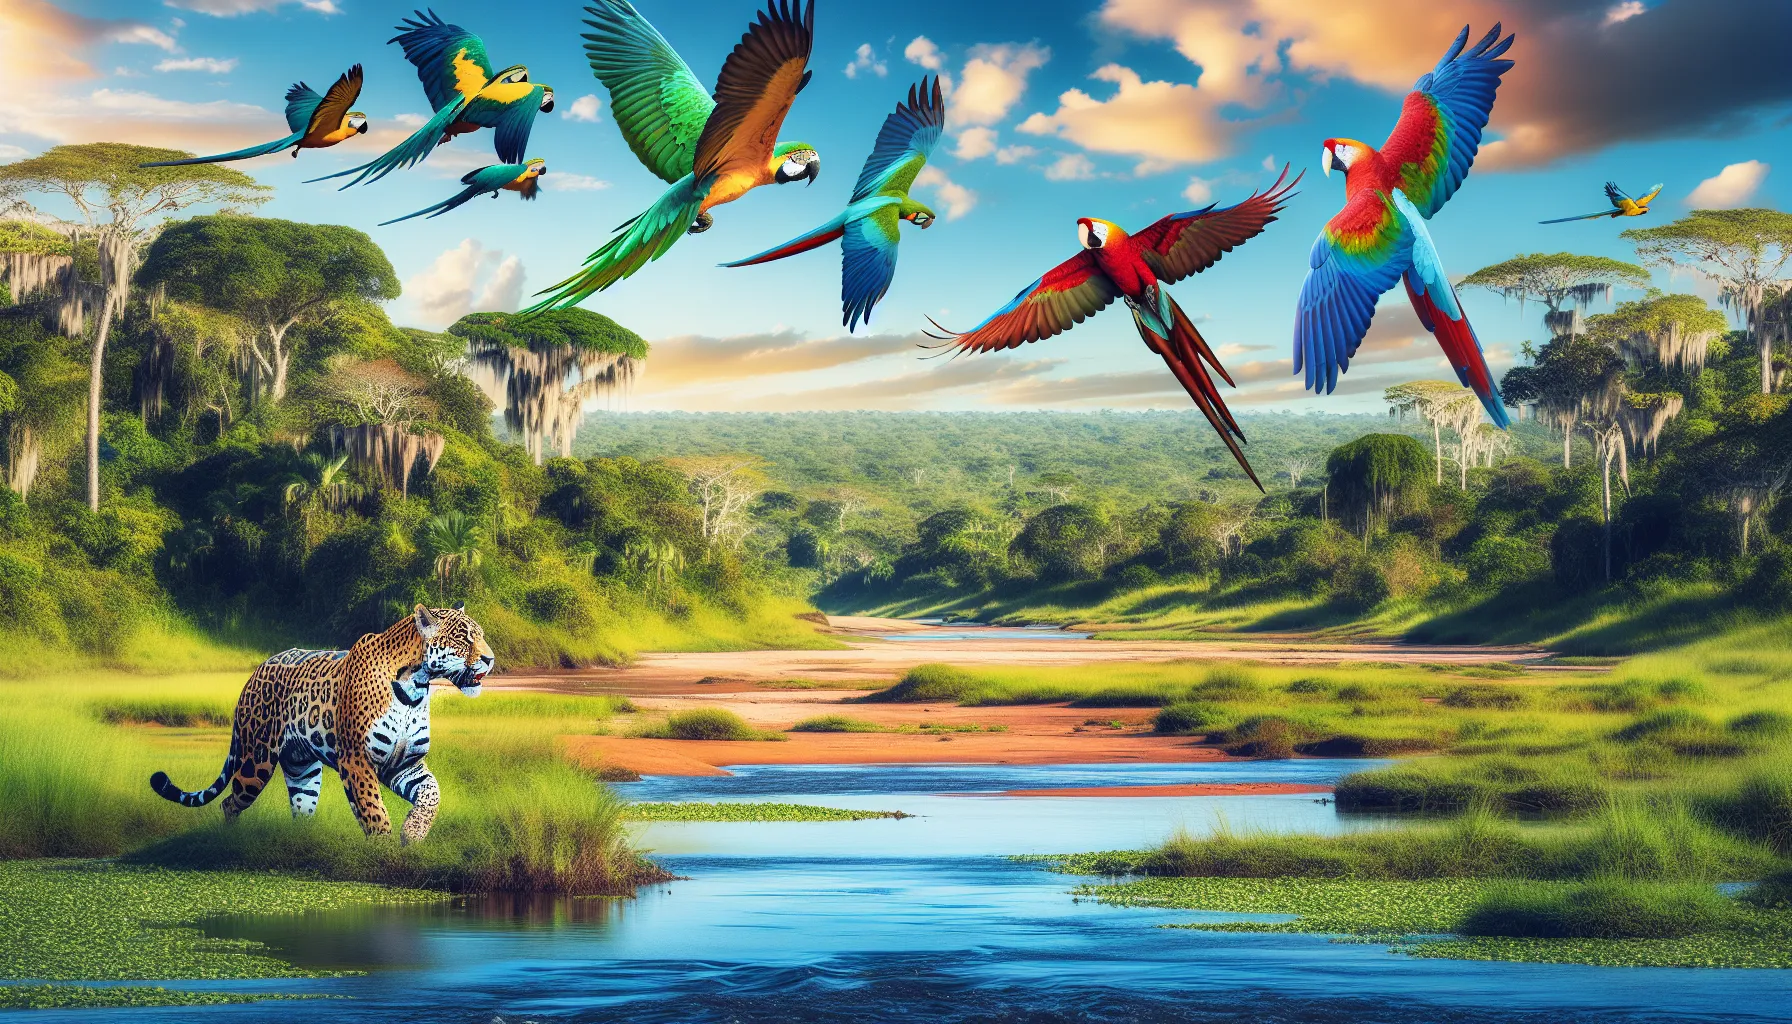 O Brasil é um país repleto de biodiversidade e oferece uma variedade de lugares incríveis para observar a vida selvagem. Aqui estão alguns dos melhores lugares para essa atividade:

1. Pantanal: Considerado um dos maiores santuários de vida selvagem do mundo, o Pantanal é o lar de uma grande diversidade de espécies, incluindo jacarés, capivaras, onças-pintadas, araras e muit